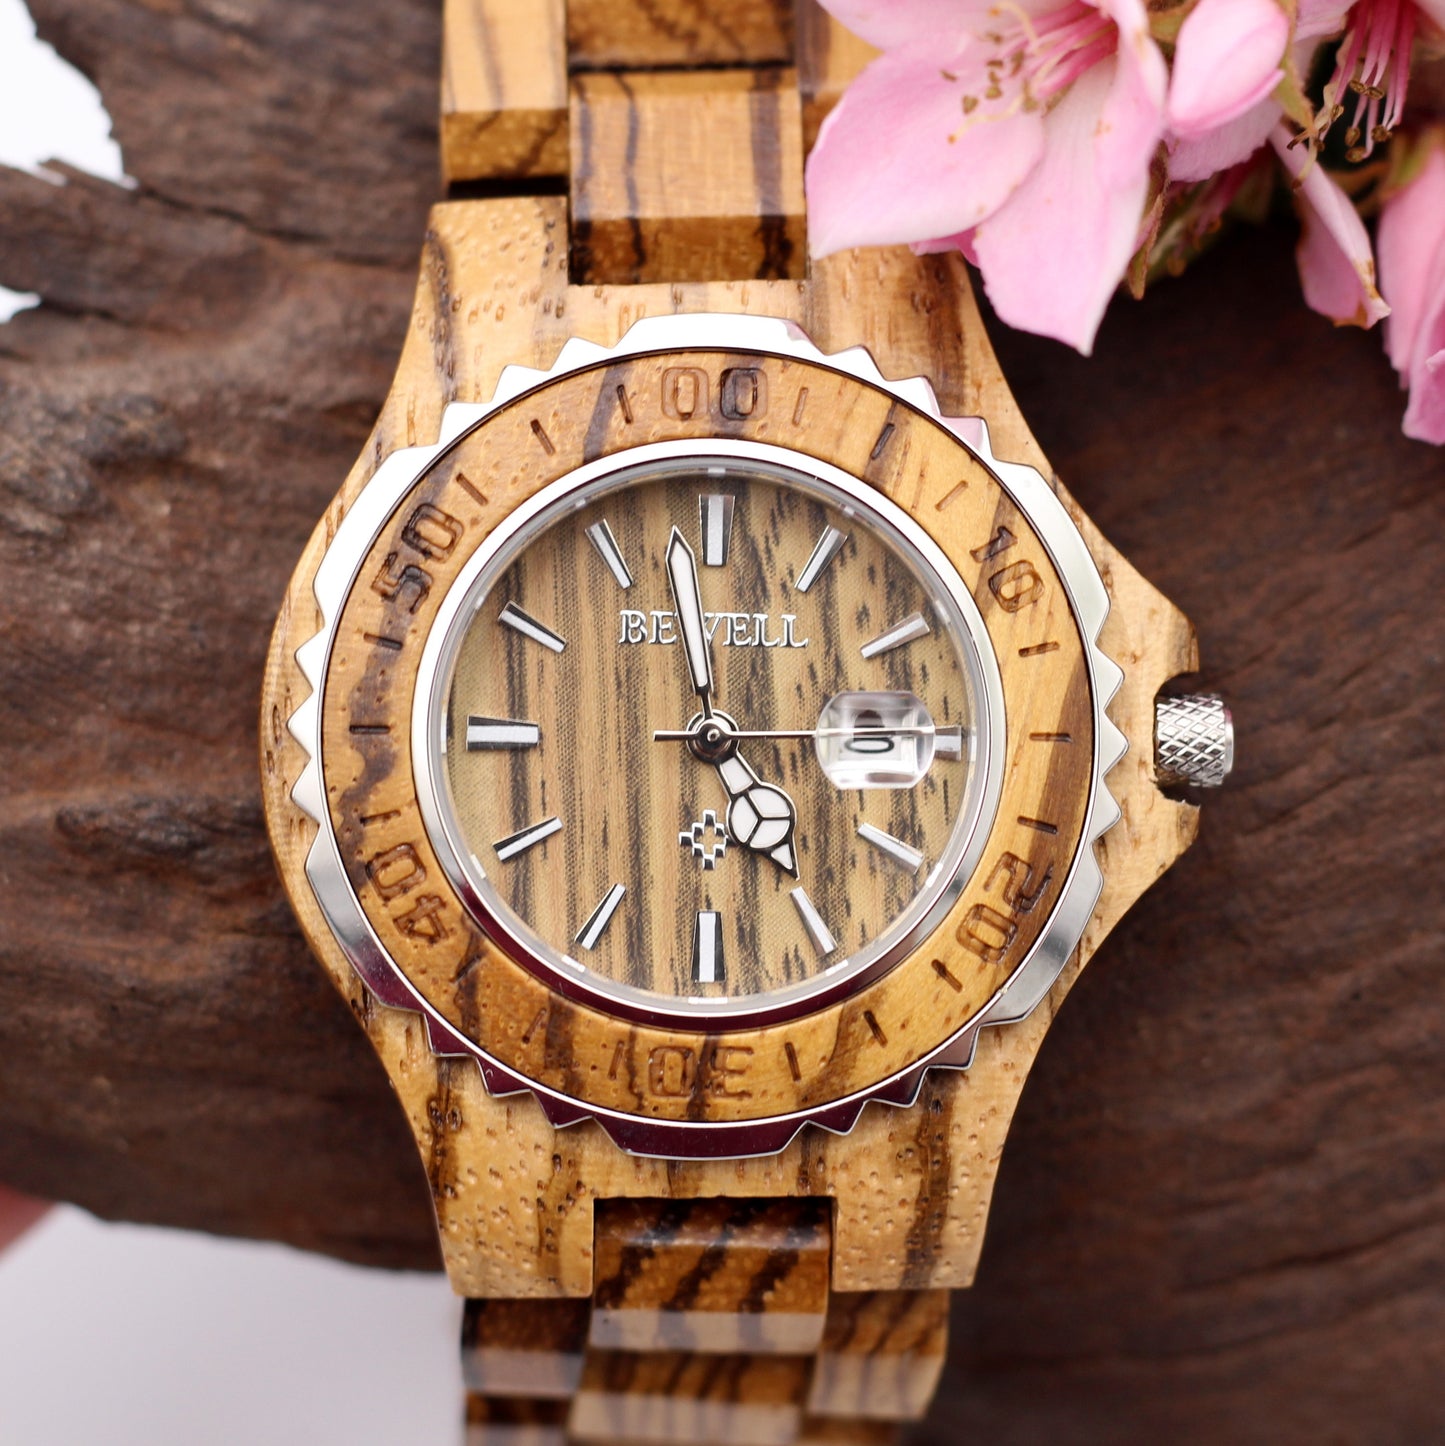 SERENA ZEBRAWOOD MISSDATE Ladies Wooden Watch Date Function